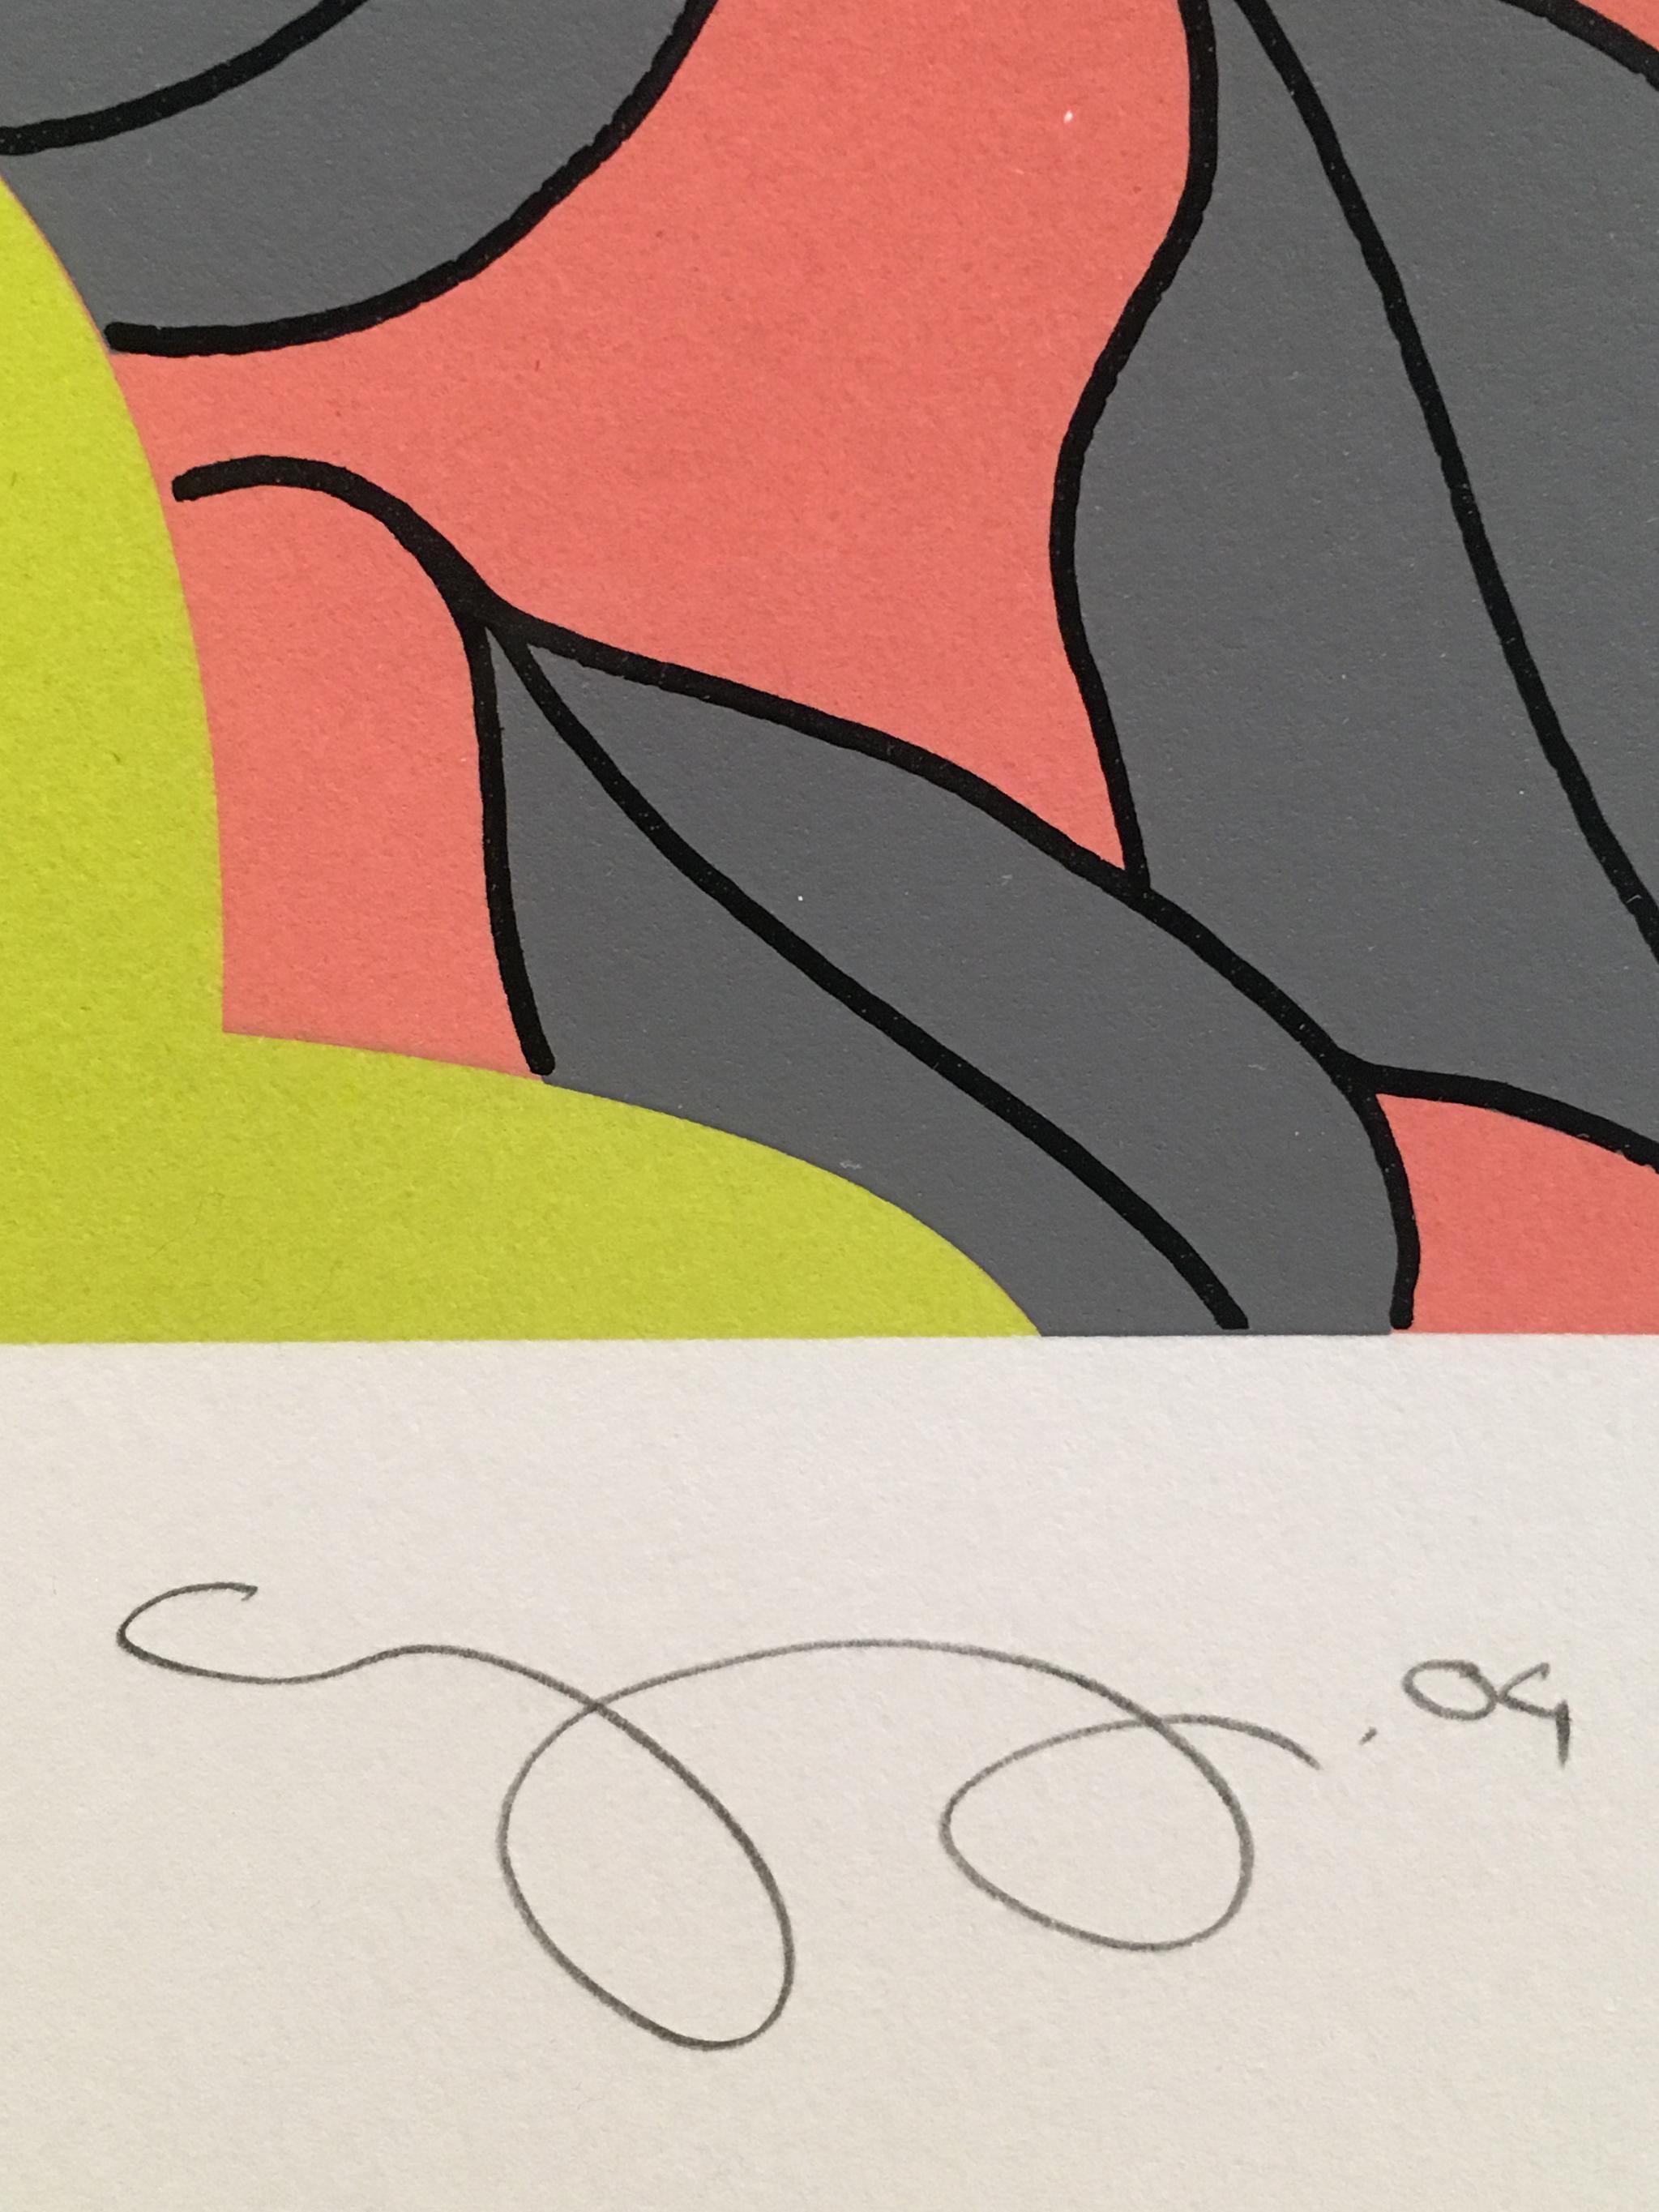 Gary Hume
Feuilles grises
2004
Sérigraphie en 4 couleurs avec un glaçage, imprimée sur Somerset Tub 400 g/m²
Feuille : 28 x 23 pouces ; 71 x 59 cm
Cadre : 30 3/8 x 25 1/2 pouces ; 77 x 65 cm
Edition de 250
Signé, titré, daté et numéroté à la mine de